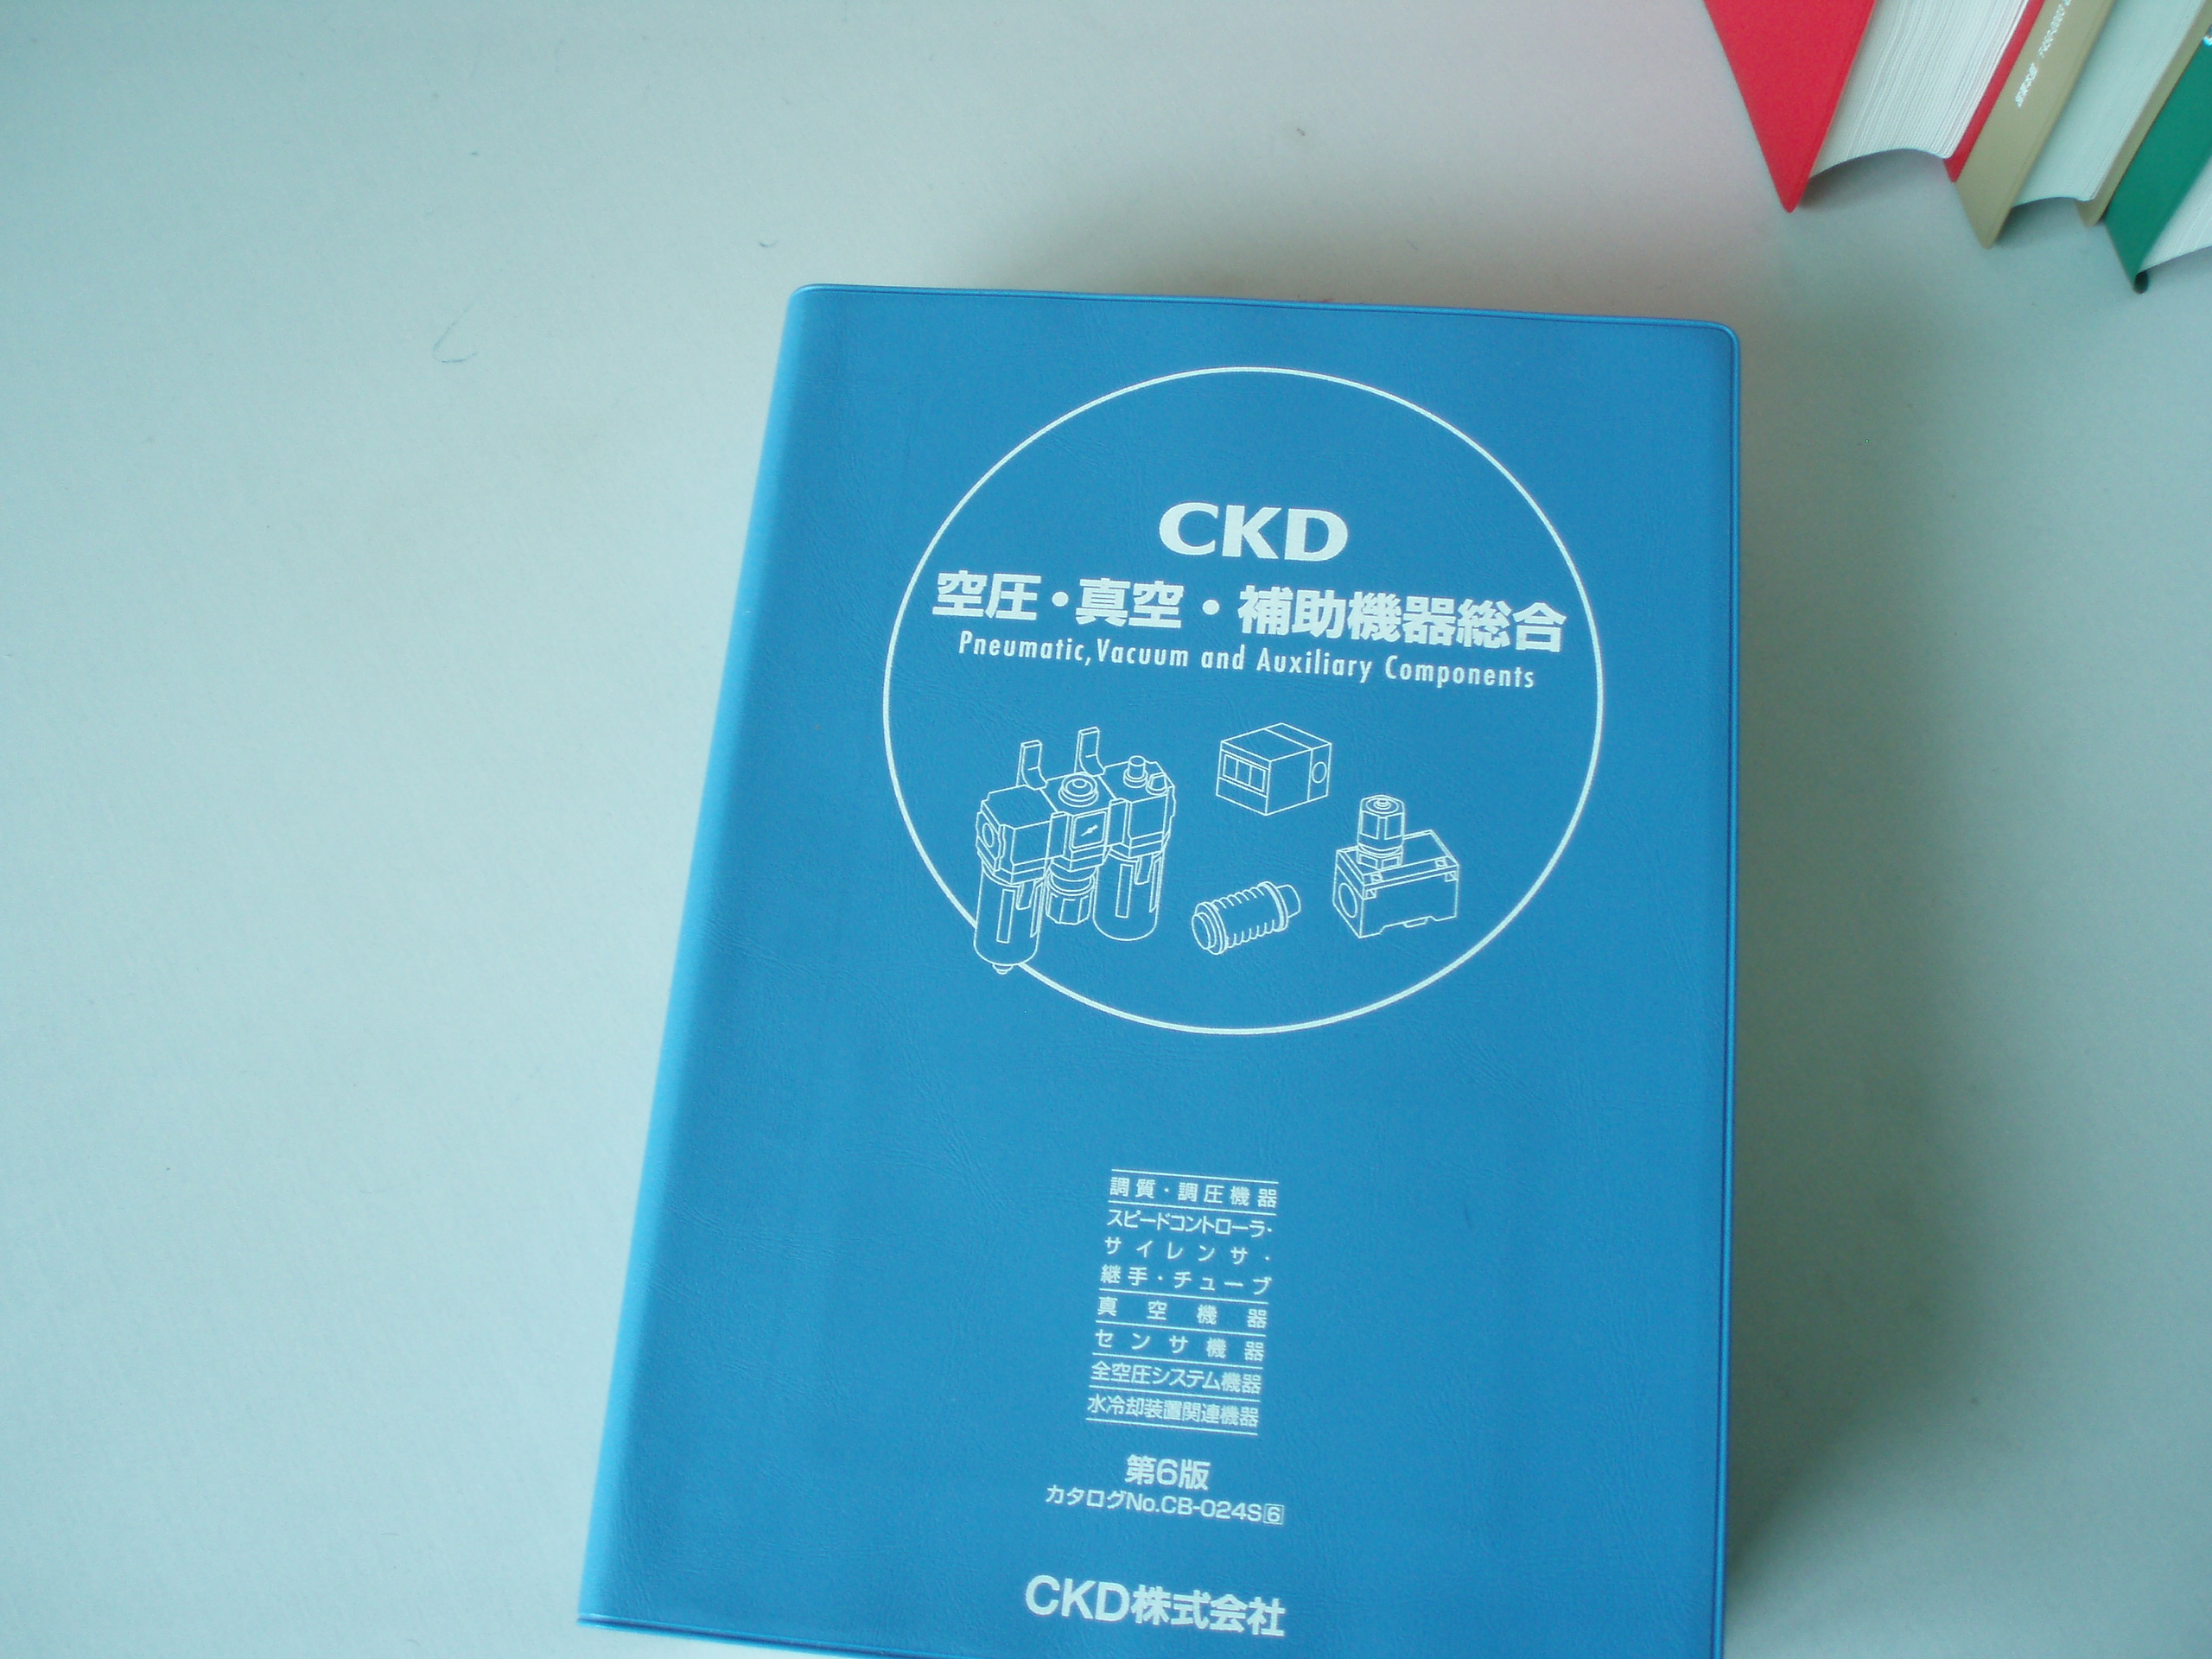 旺德富为CKD公司提供翻译排版兼制作服务（六）